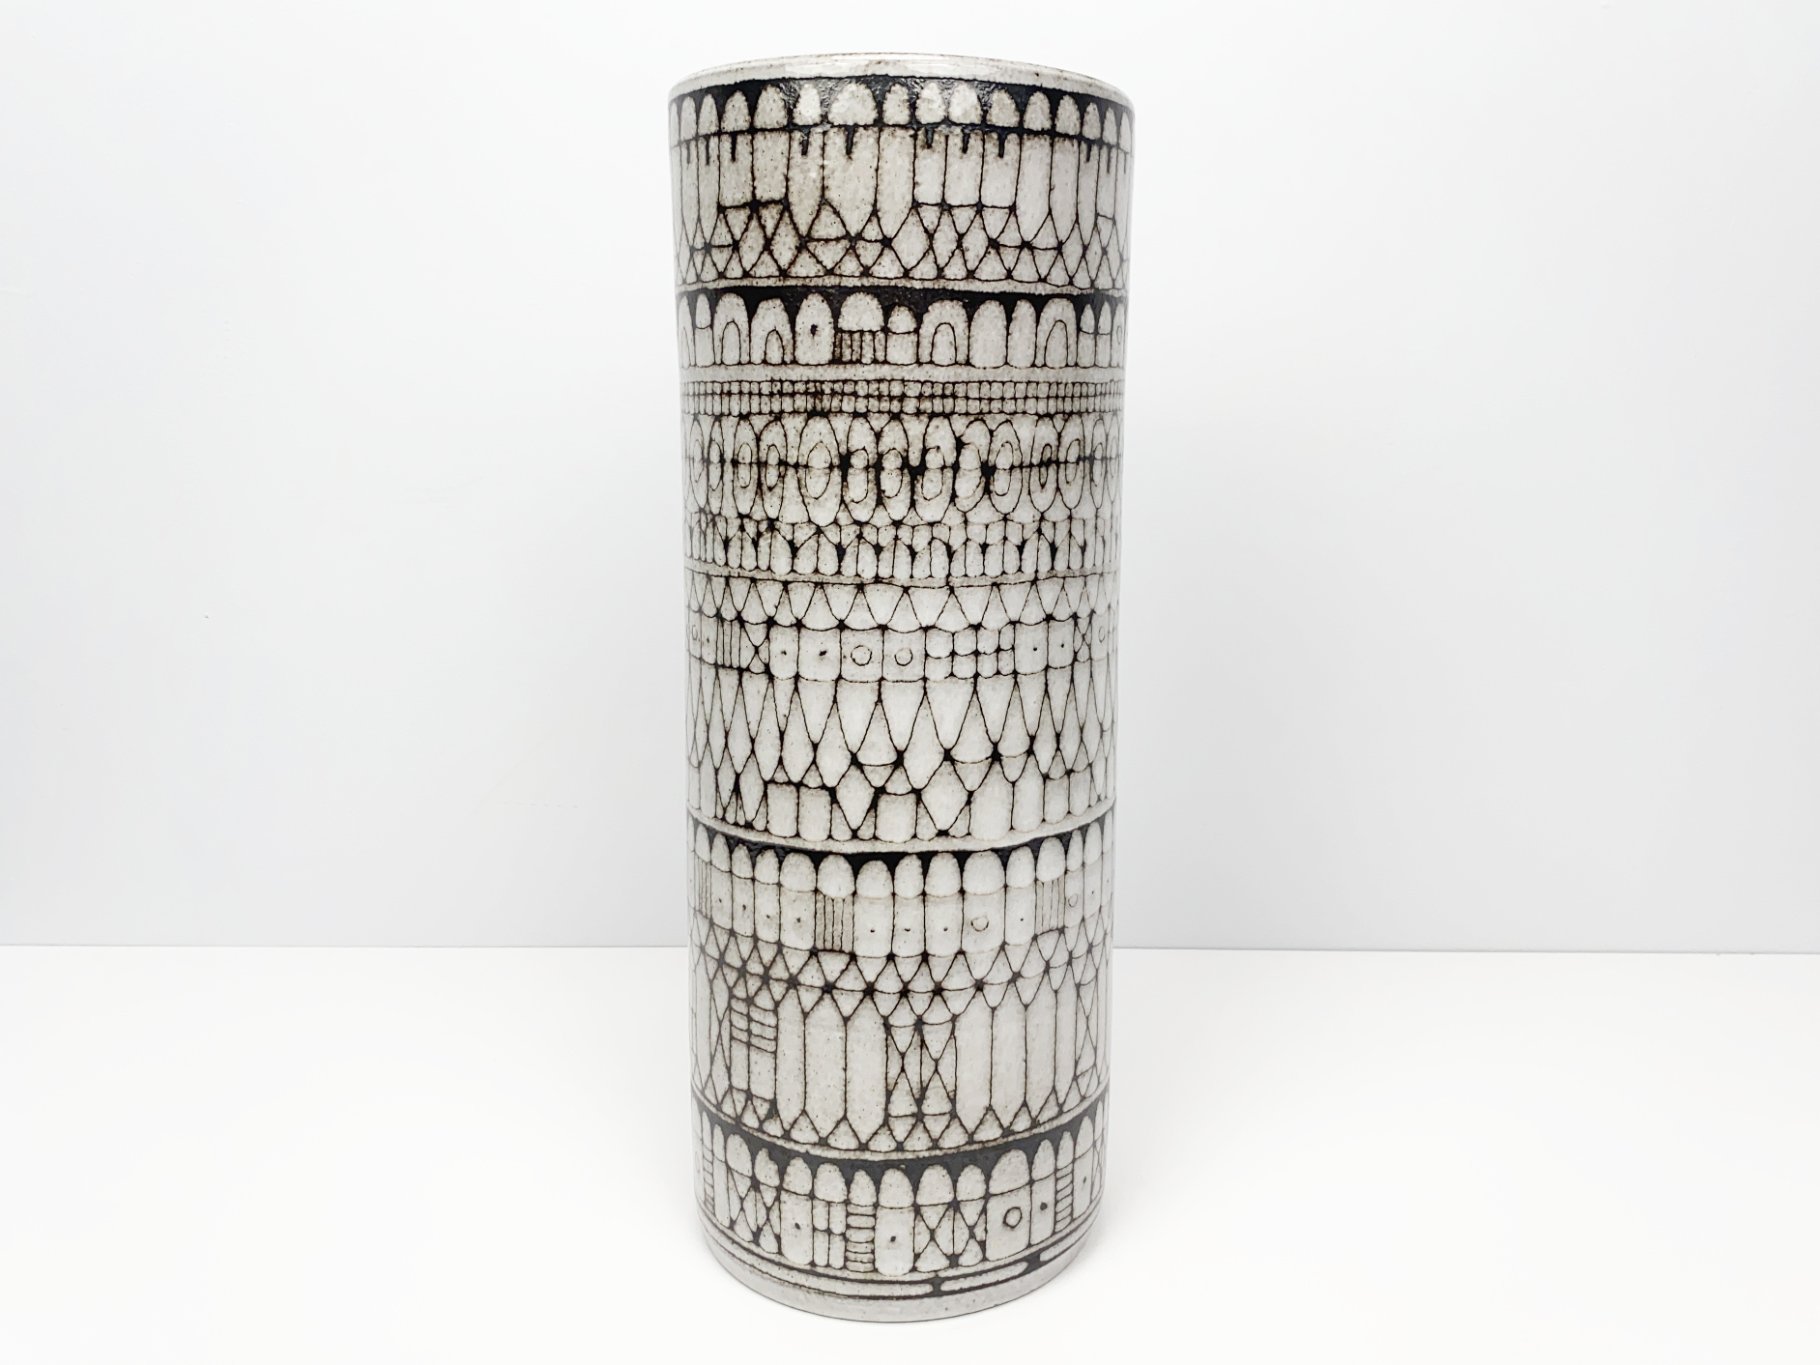 Große Vase, Keramik, Irdenware, Unikat, abstraktes Dekor, Sgraffittotechnik, von Wilhelm & Elly Kuch, 1960er